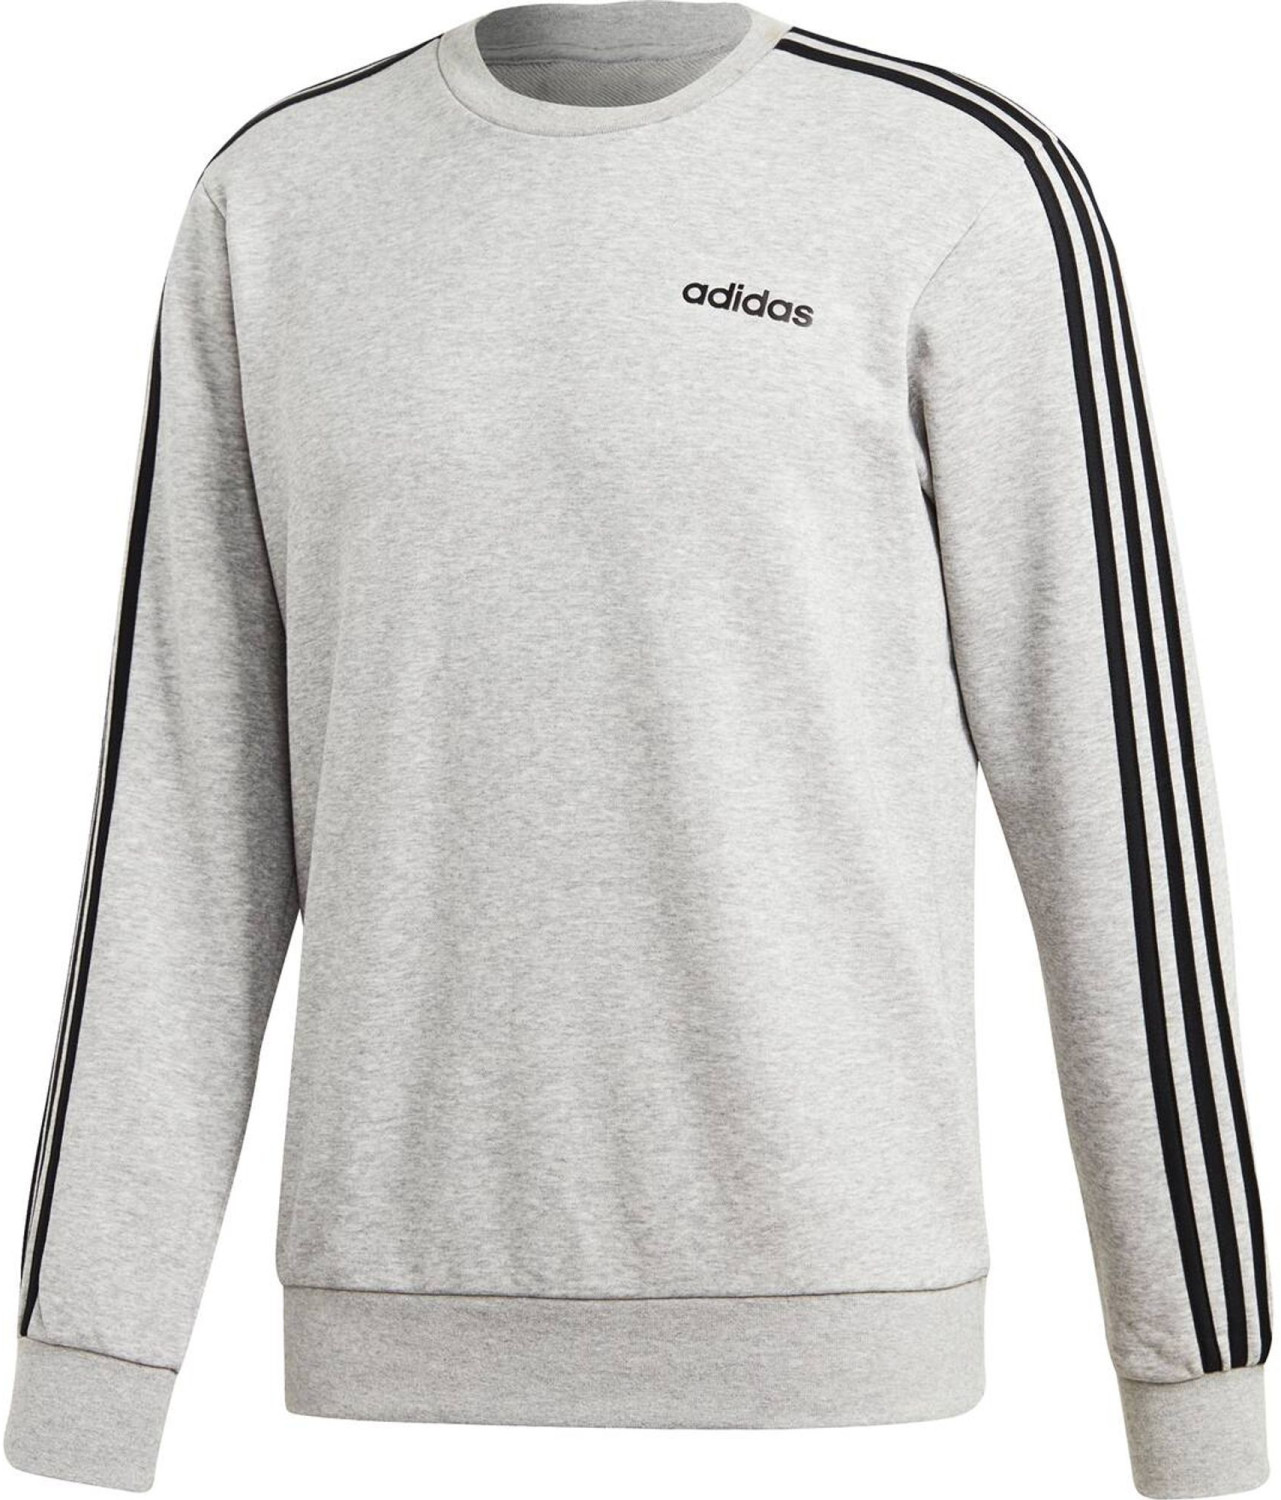 Ab 41 21 Adidas Men Athletics Essentials 3 Stripes Sweatshirt Kaufen Preisvergleich Bei Idealo De